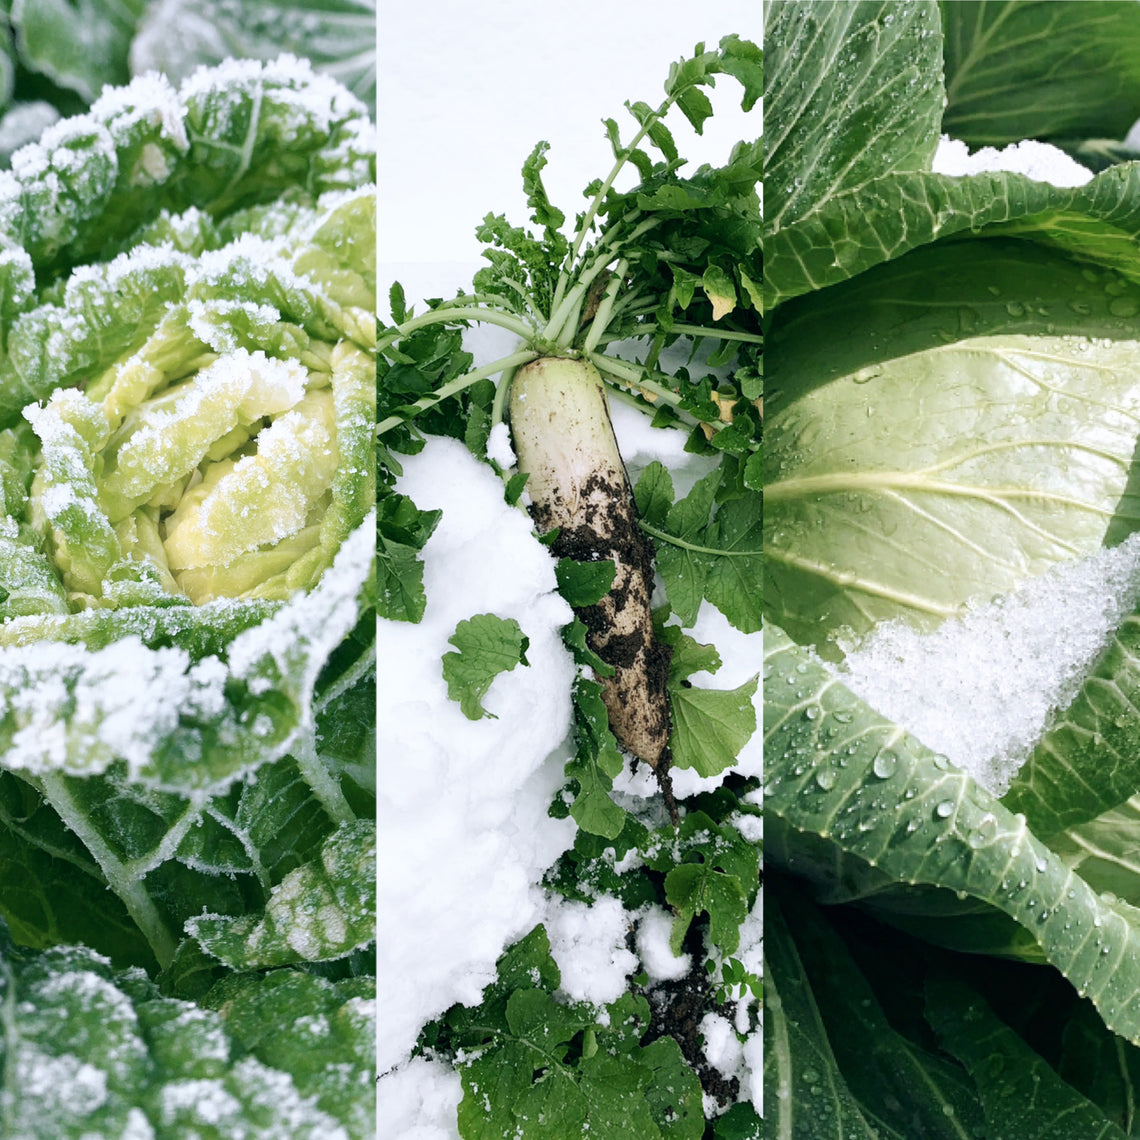 【予約販売】雪国の越冬野菜セット